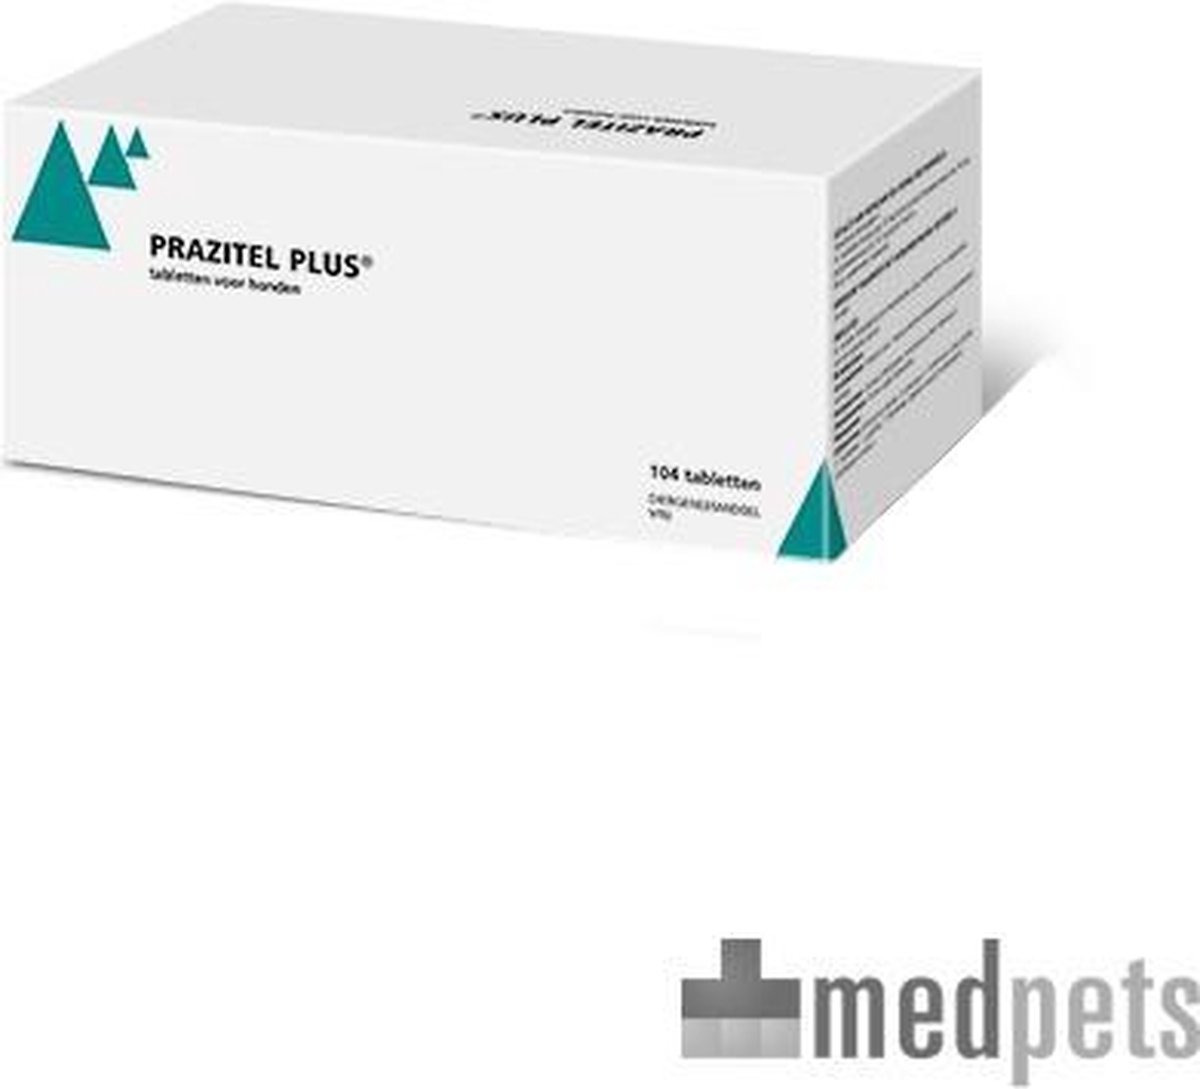 Prazitel Plus - 8 tabletten | bol.com